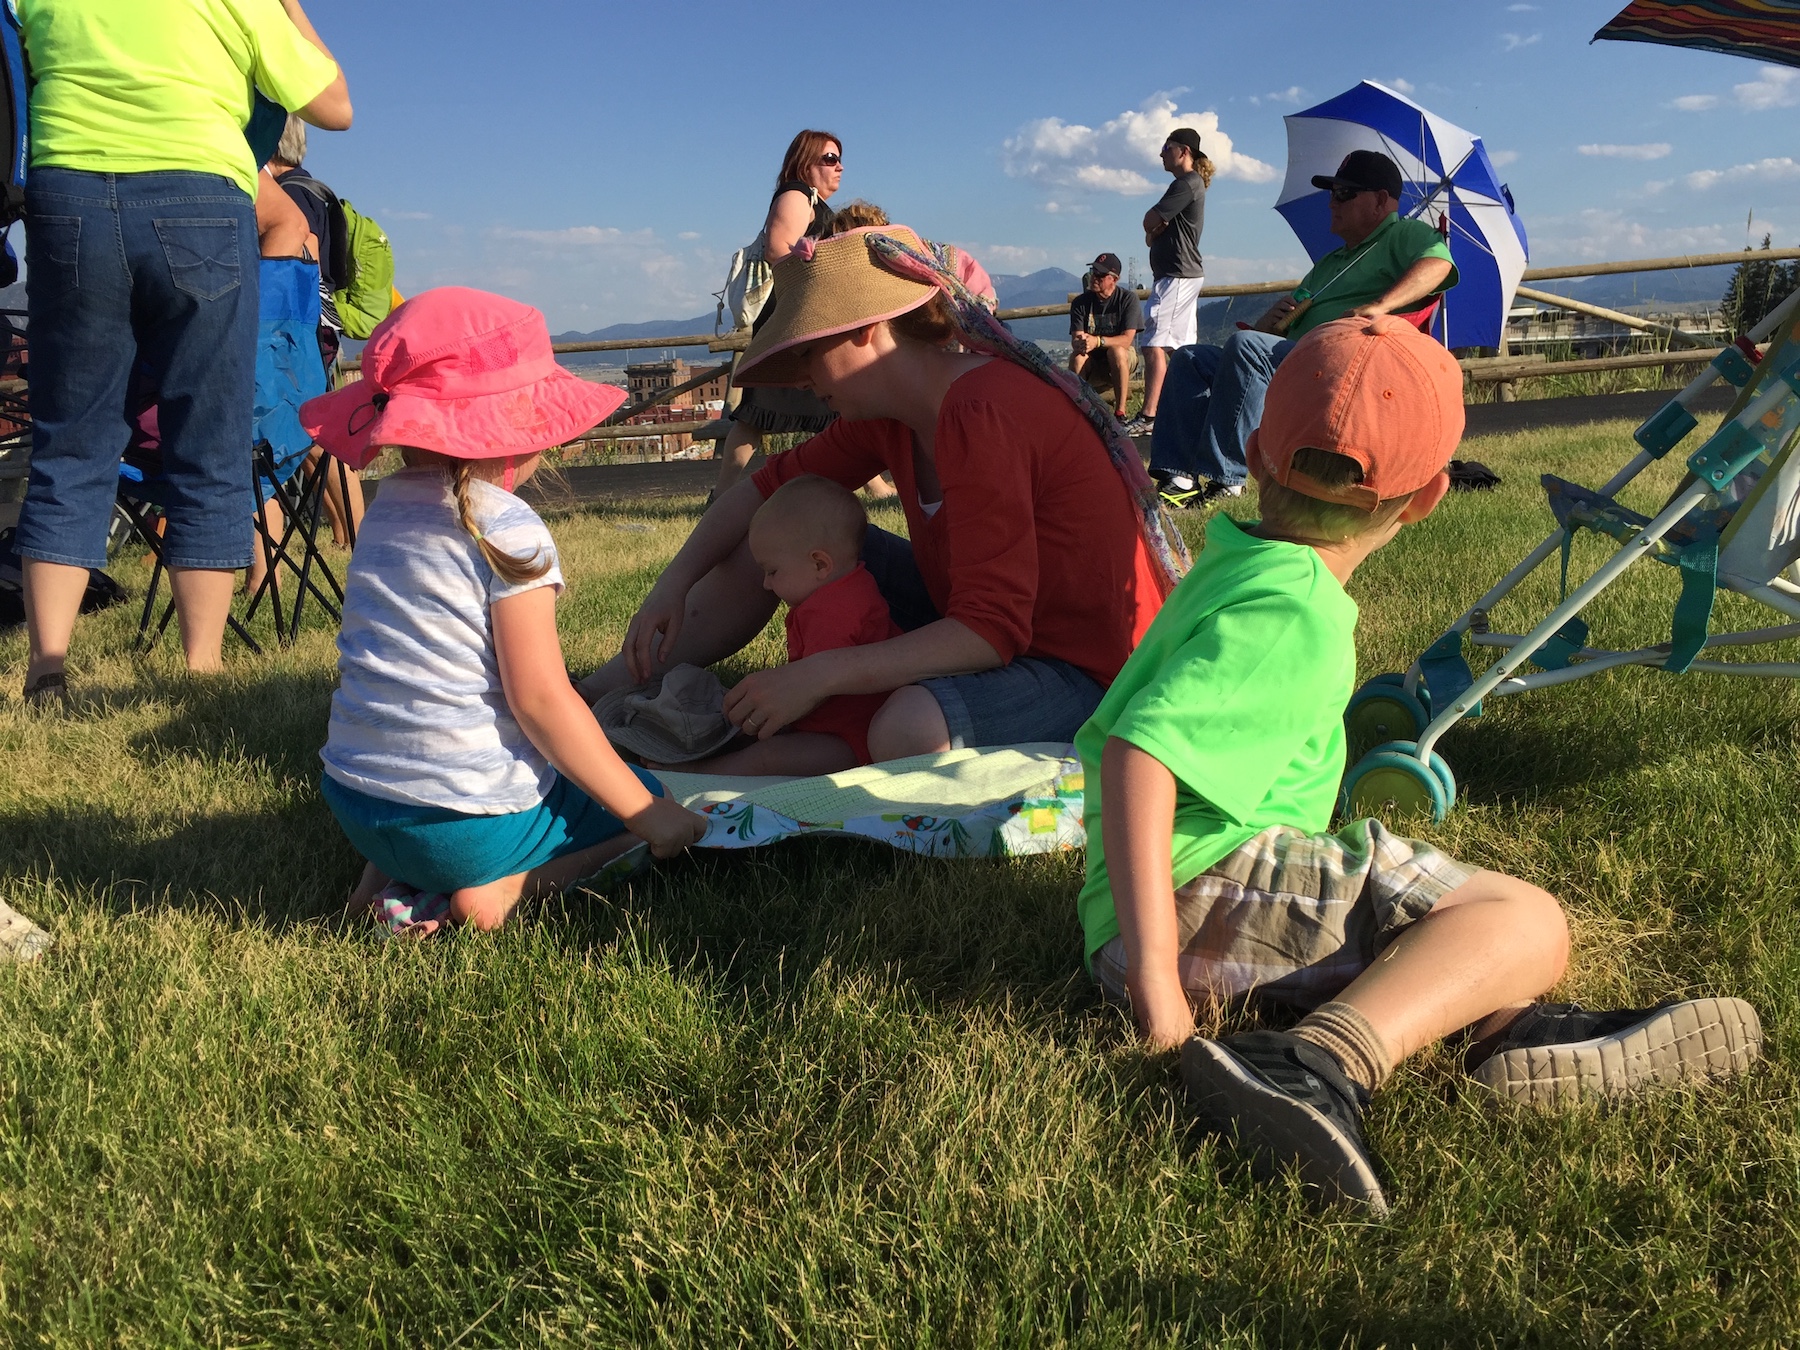 2017 Folk Festival in Butte, Montana